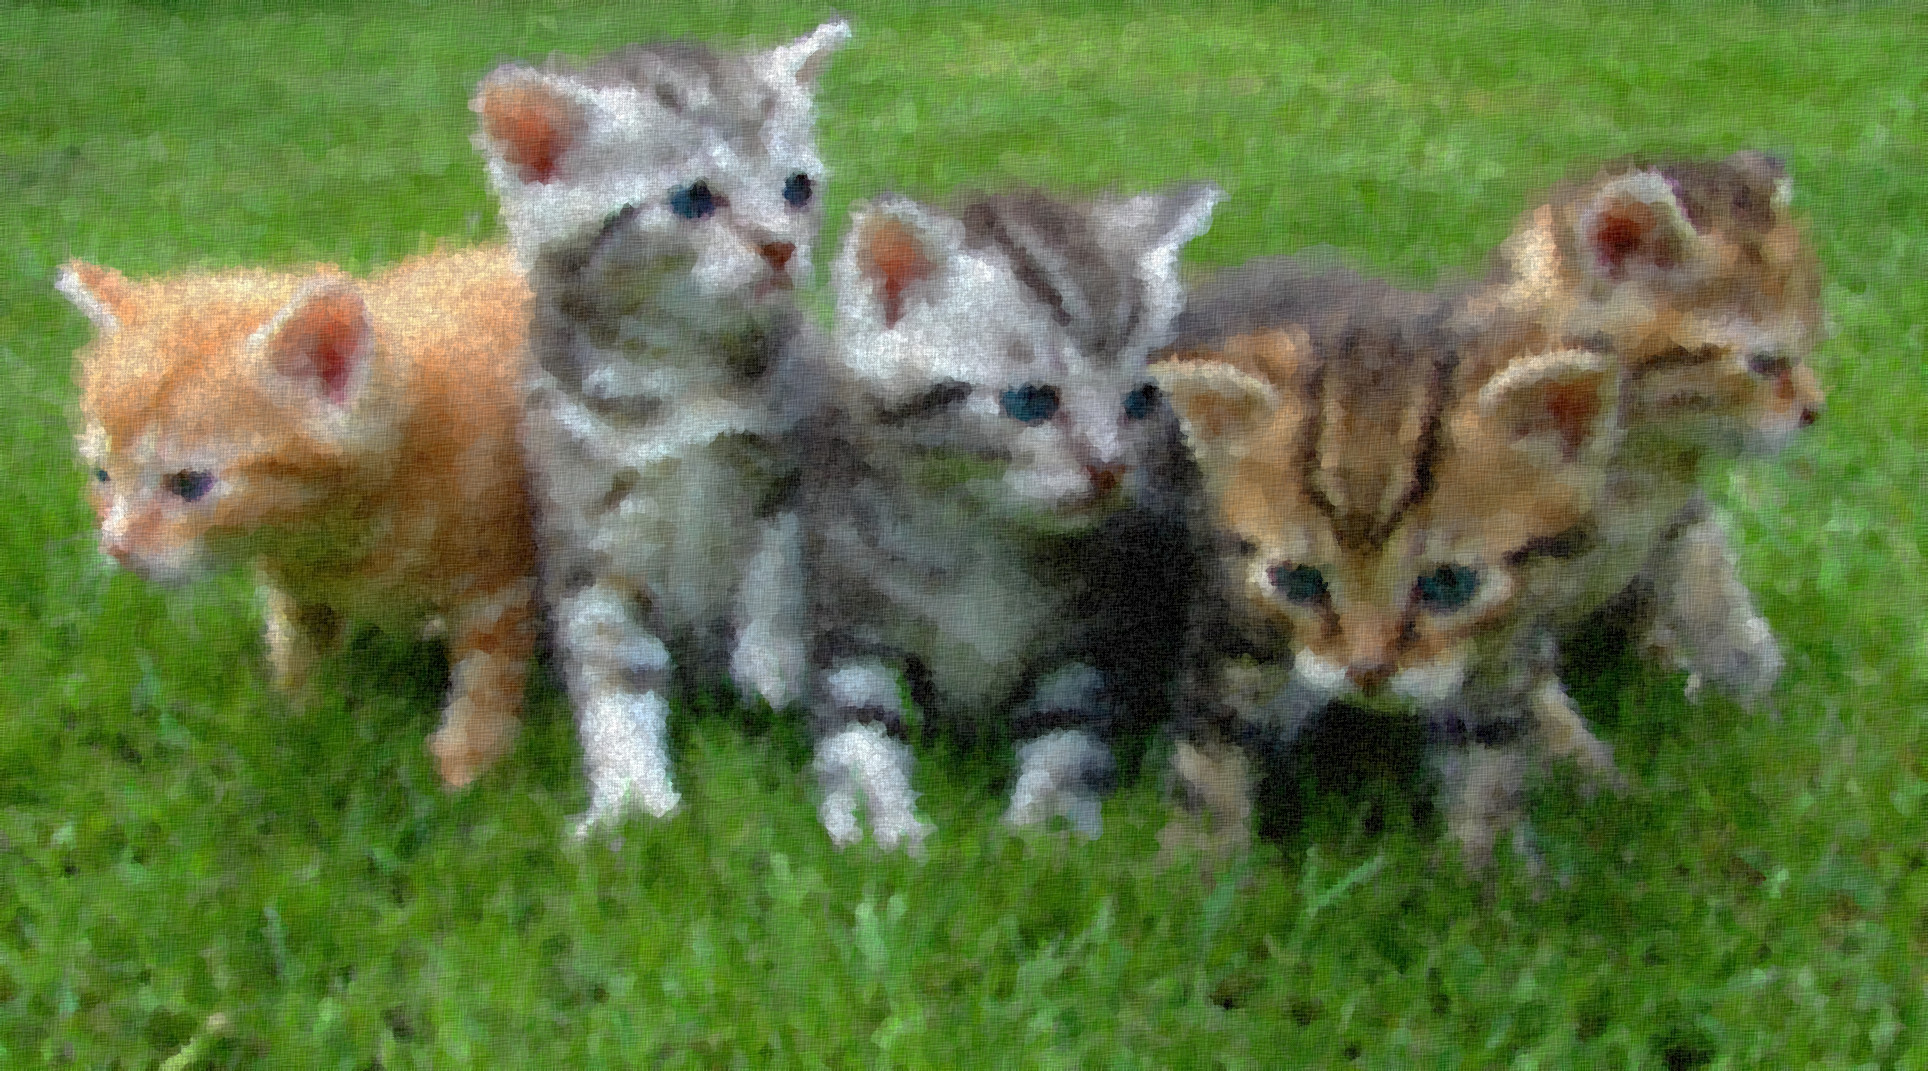 kittens-cat-cat-puppy-rush-45170_Graphic_Effect_FakeSponge_Jvid_Q.jpeg